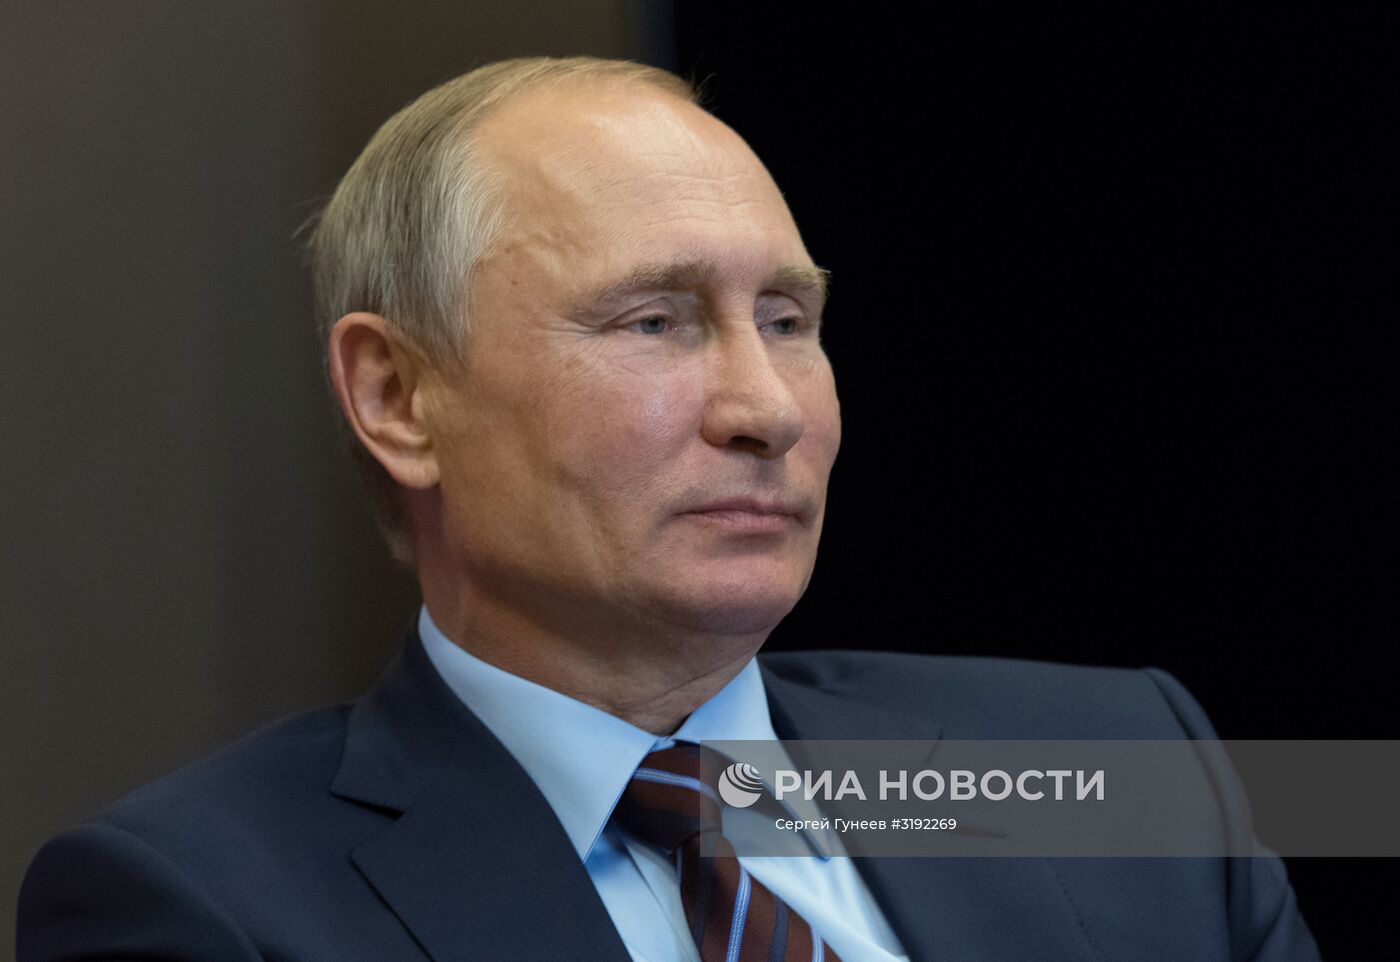 Рабочая поездка президента РФ В. Путина в Южный федеральный округ